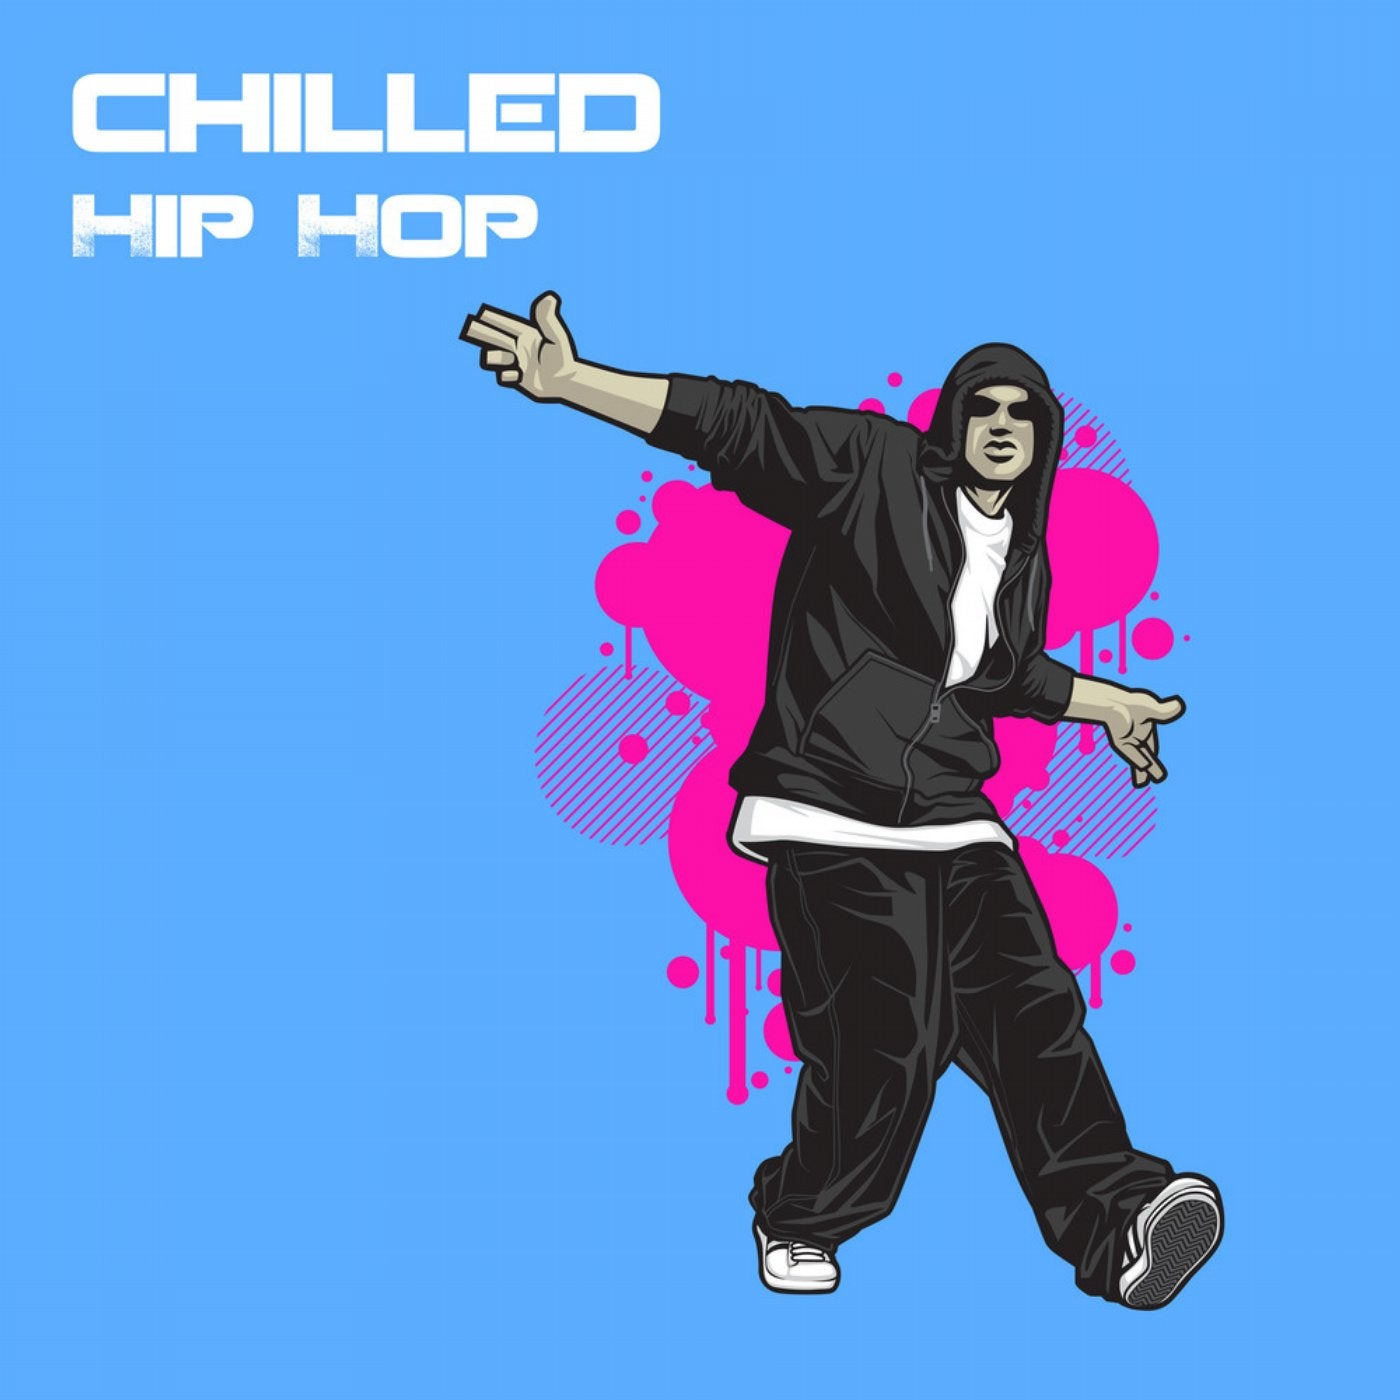 Chill hip hop